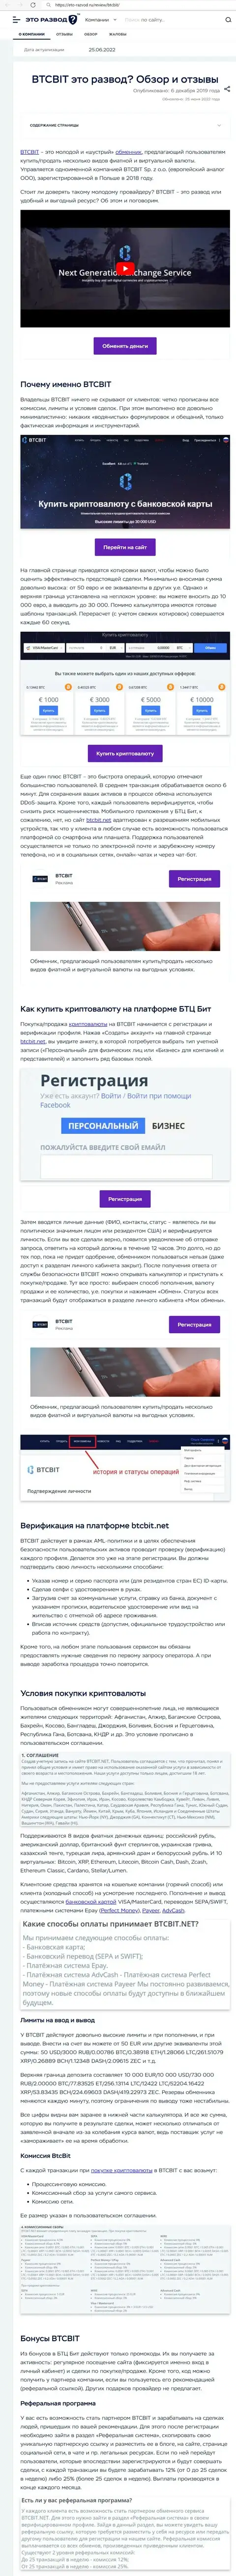 Обзор услуг и условия для предоставления услуг обменки БТК Бит в обзоре на онлайн-сервисе Eto Razvod Ru